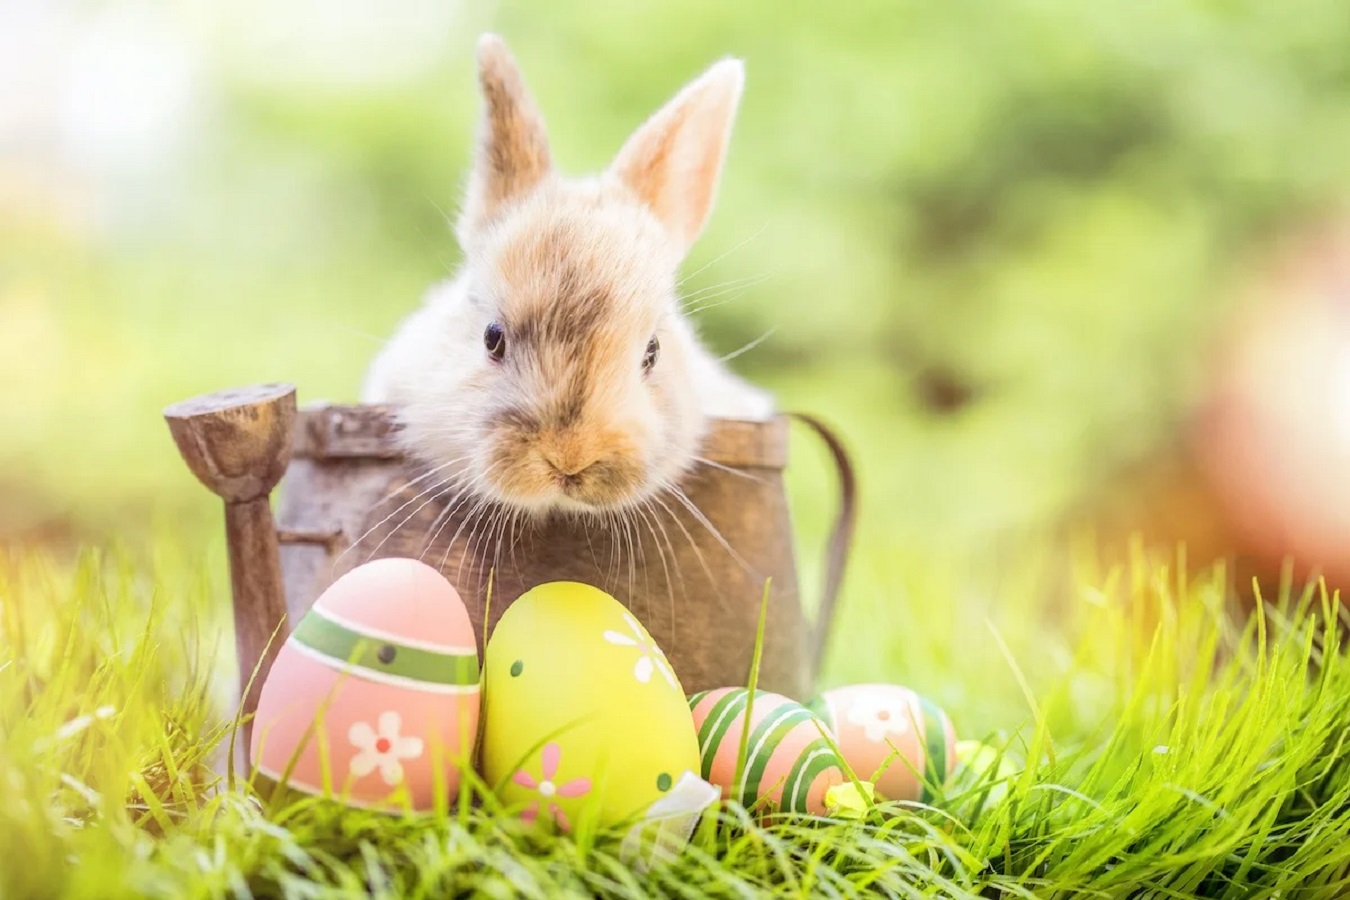 Wielkanoc - Poznaj Tradycje i Zwyczaje na Święta Wielkanocne